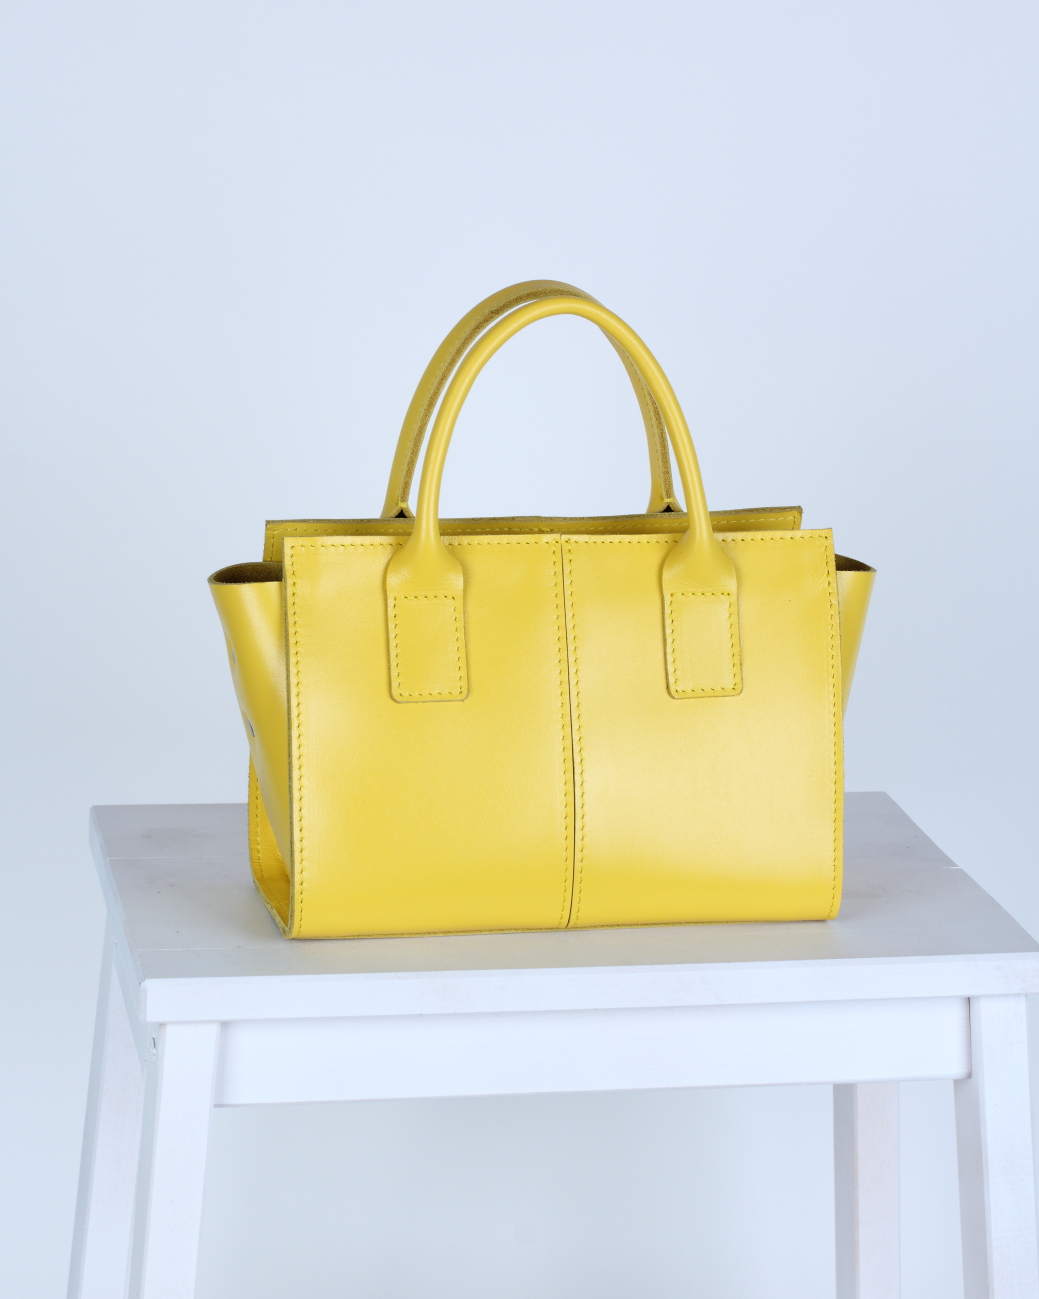 Женская сумка тоут из натуральной кожи лимонная A027 lemon mini